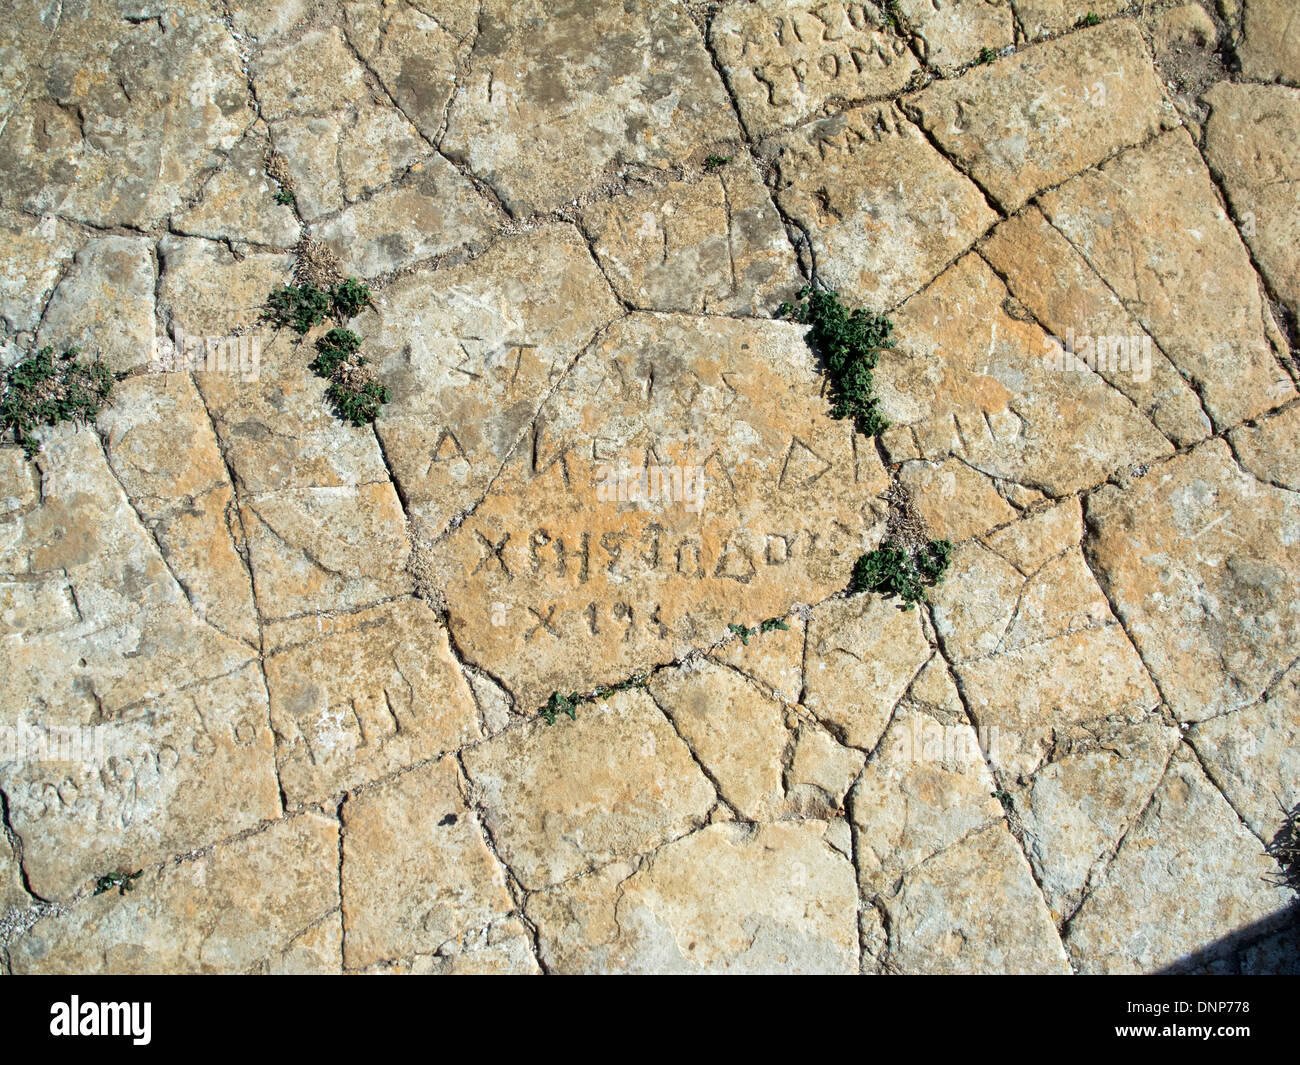 Griechenland, Kastellorizo, Paleokastro ( die alte Burg ) auf einem 145 m hohen Felsplateau. Inschriften im Steinboden. Stock Photo